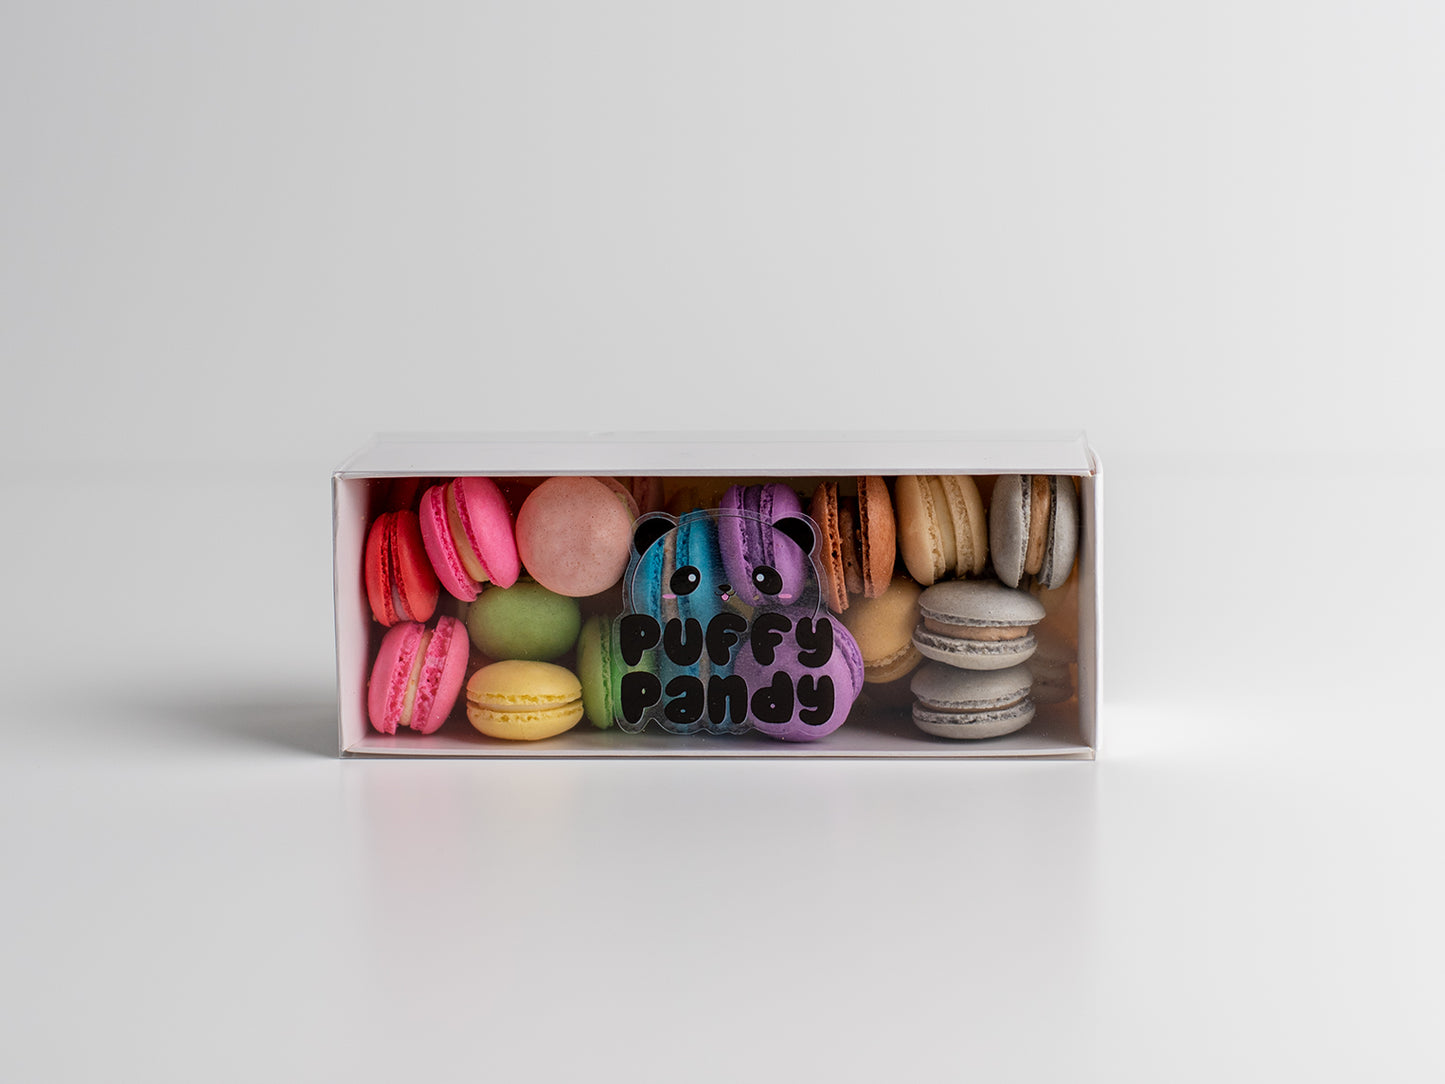 Mini Macarons - Small – puffypandy